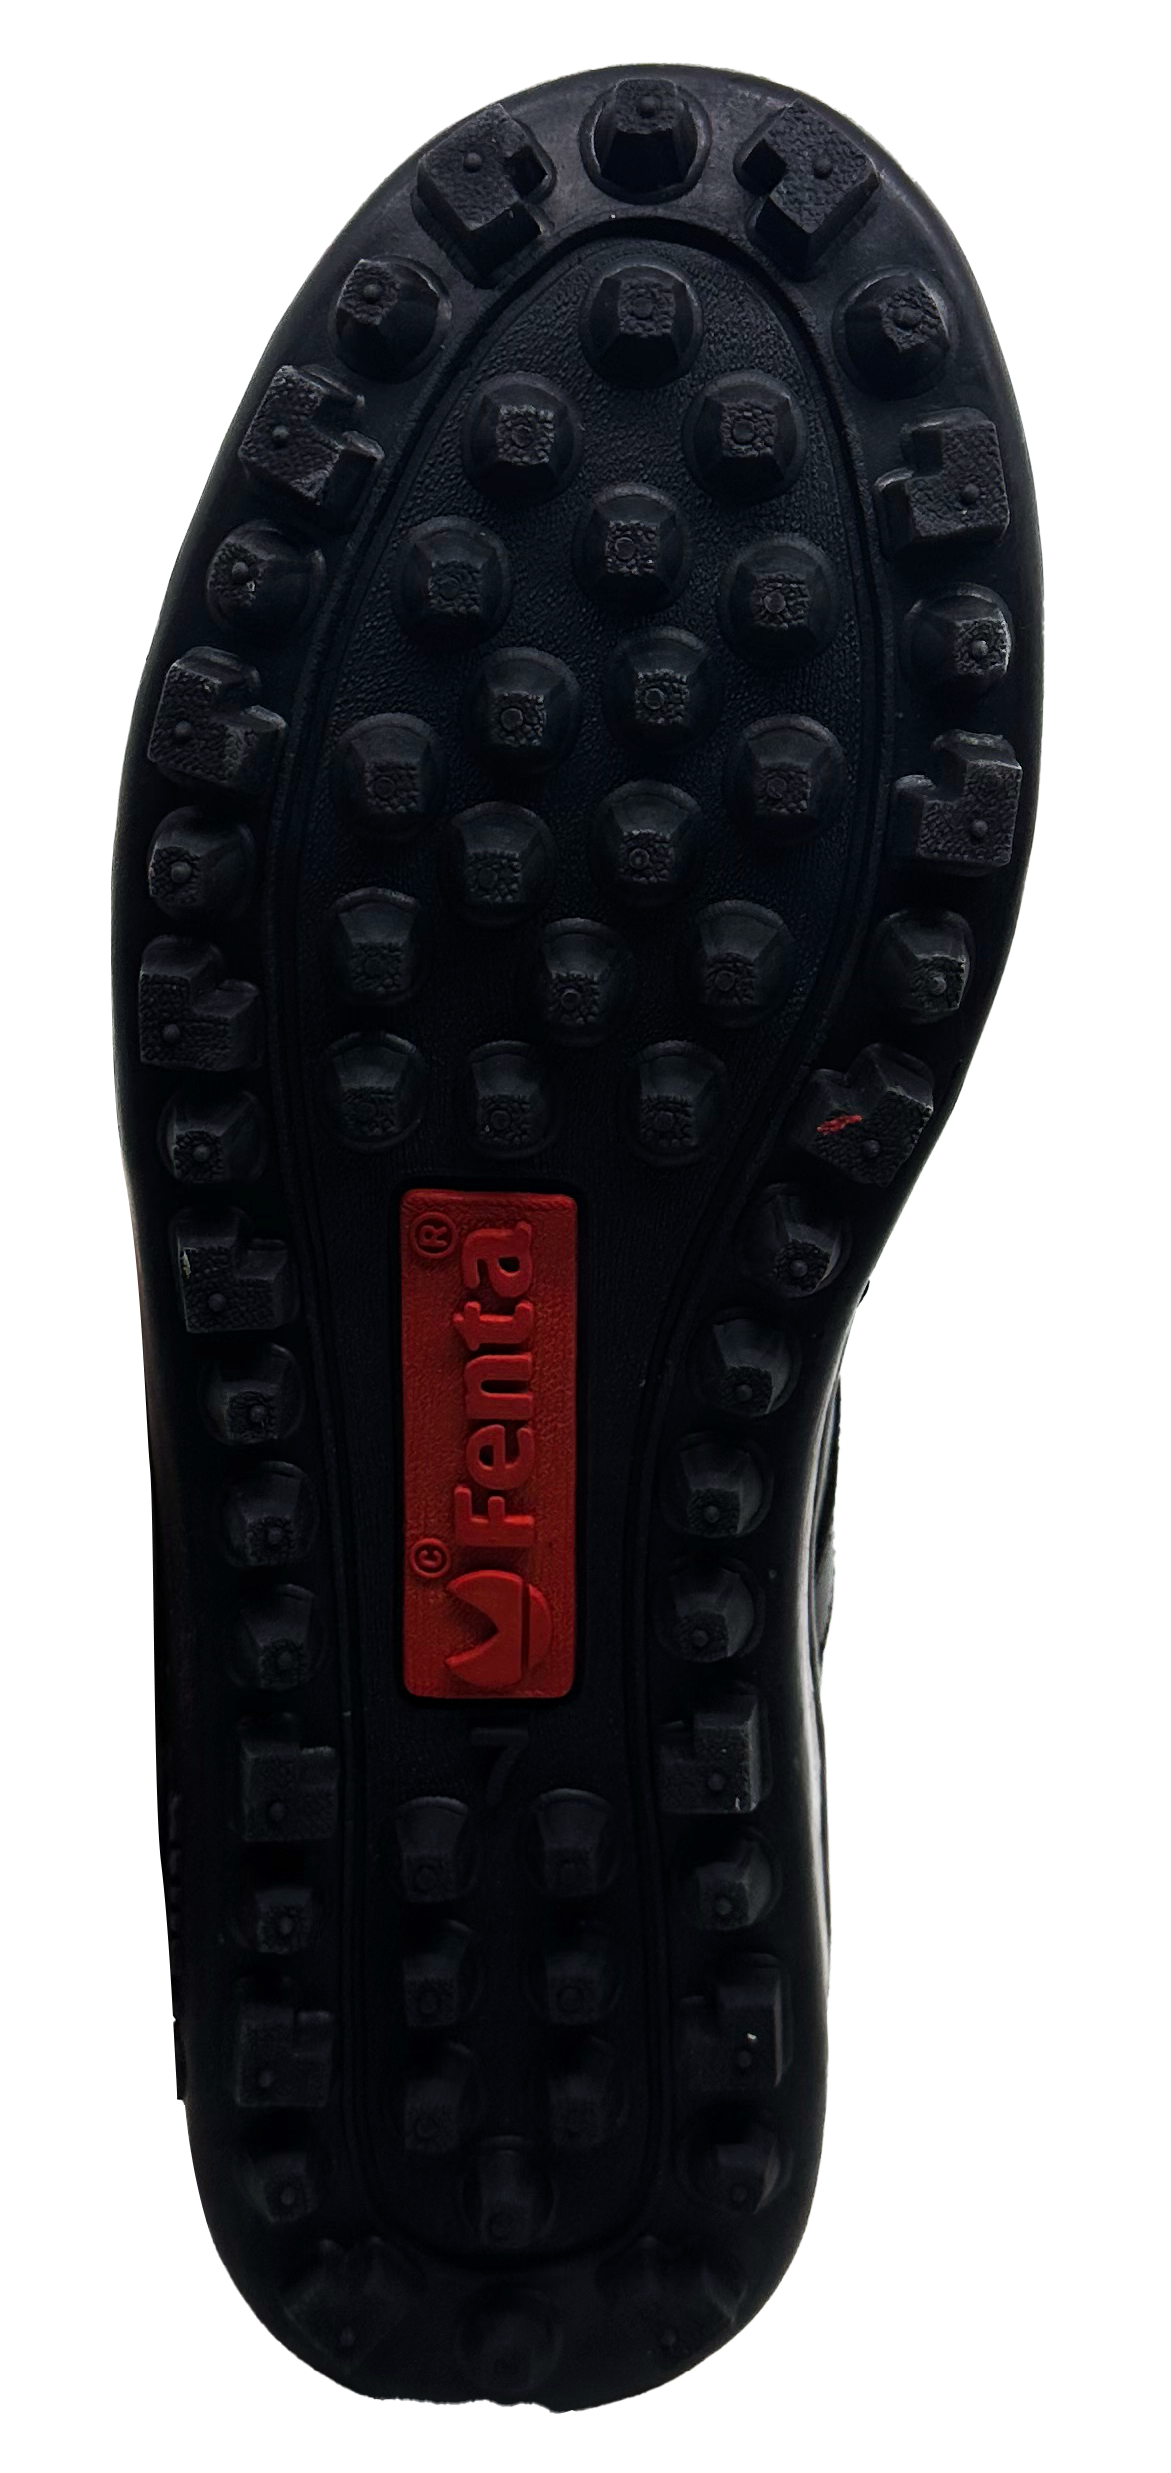 Fenta Unisex Flame Hockey Shoes (Black)